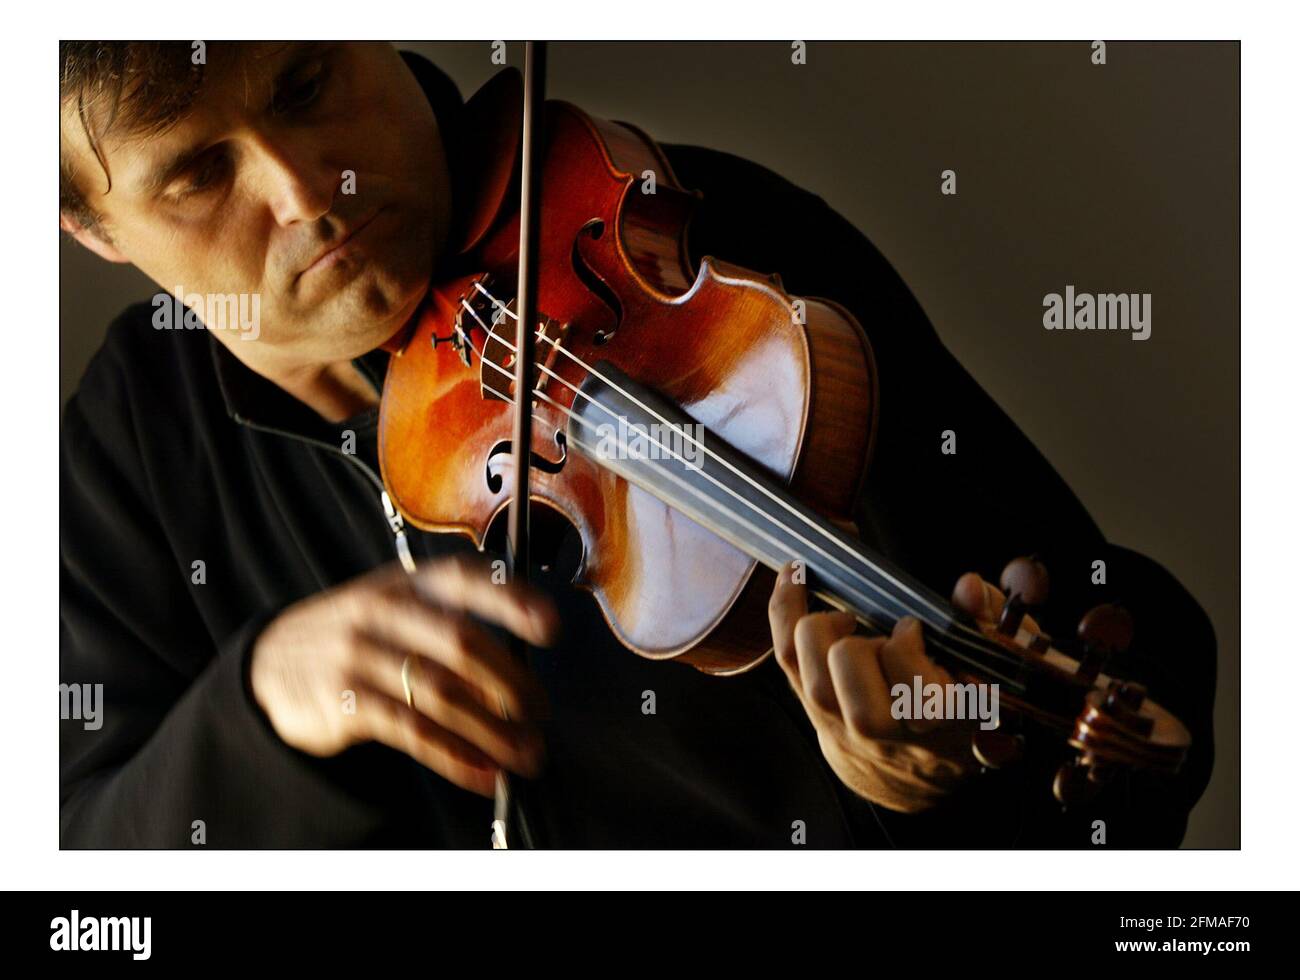 Eine der wichtigsten Geigen der Welt, die 'Viotte ex-Bruce' Stradivari, gespielt von Peter Sheppard Skaerved, Solokünstler und führender Autorität für Viottis Leben und Werk. Diese Geige wurde für die Nation durch die Museen, Bibliotheken und Archive Counception in Lieu Schema gerettet. Die Violine wurde der Royal Academy of Music zugewiesen.pic David Sandison 2/9/2005 Stockfoto